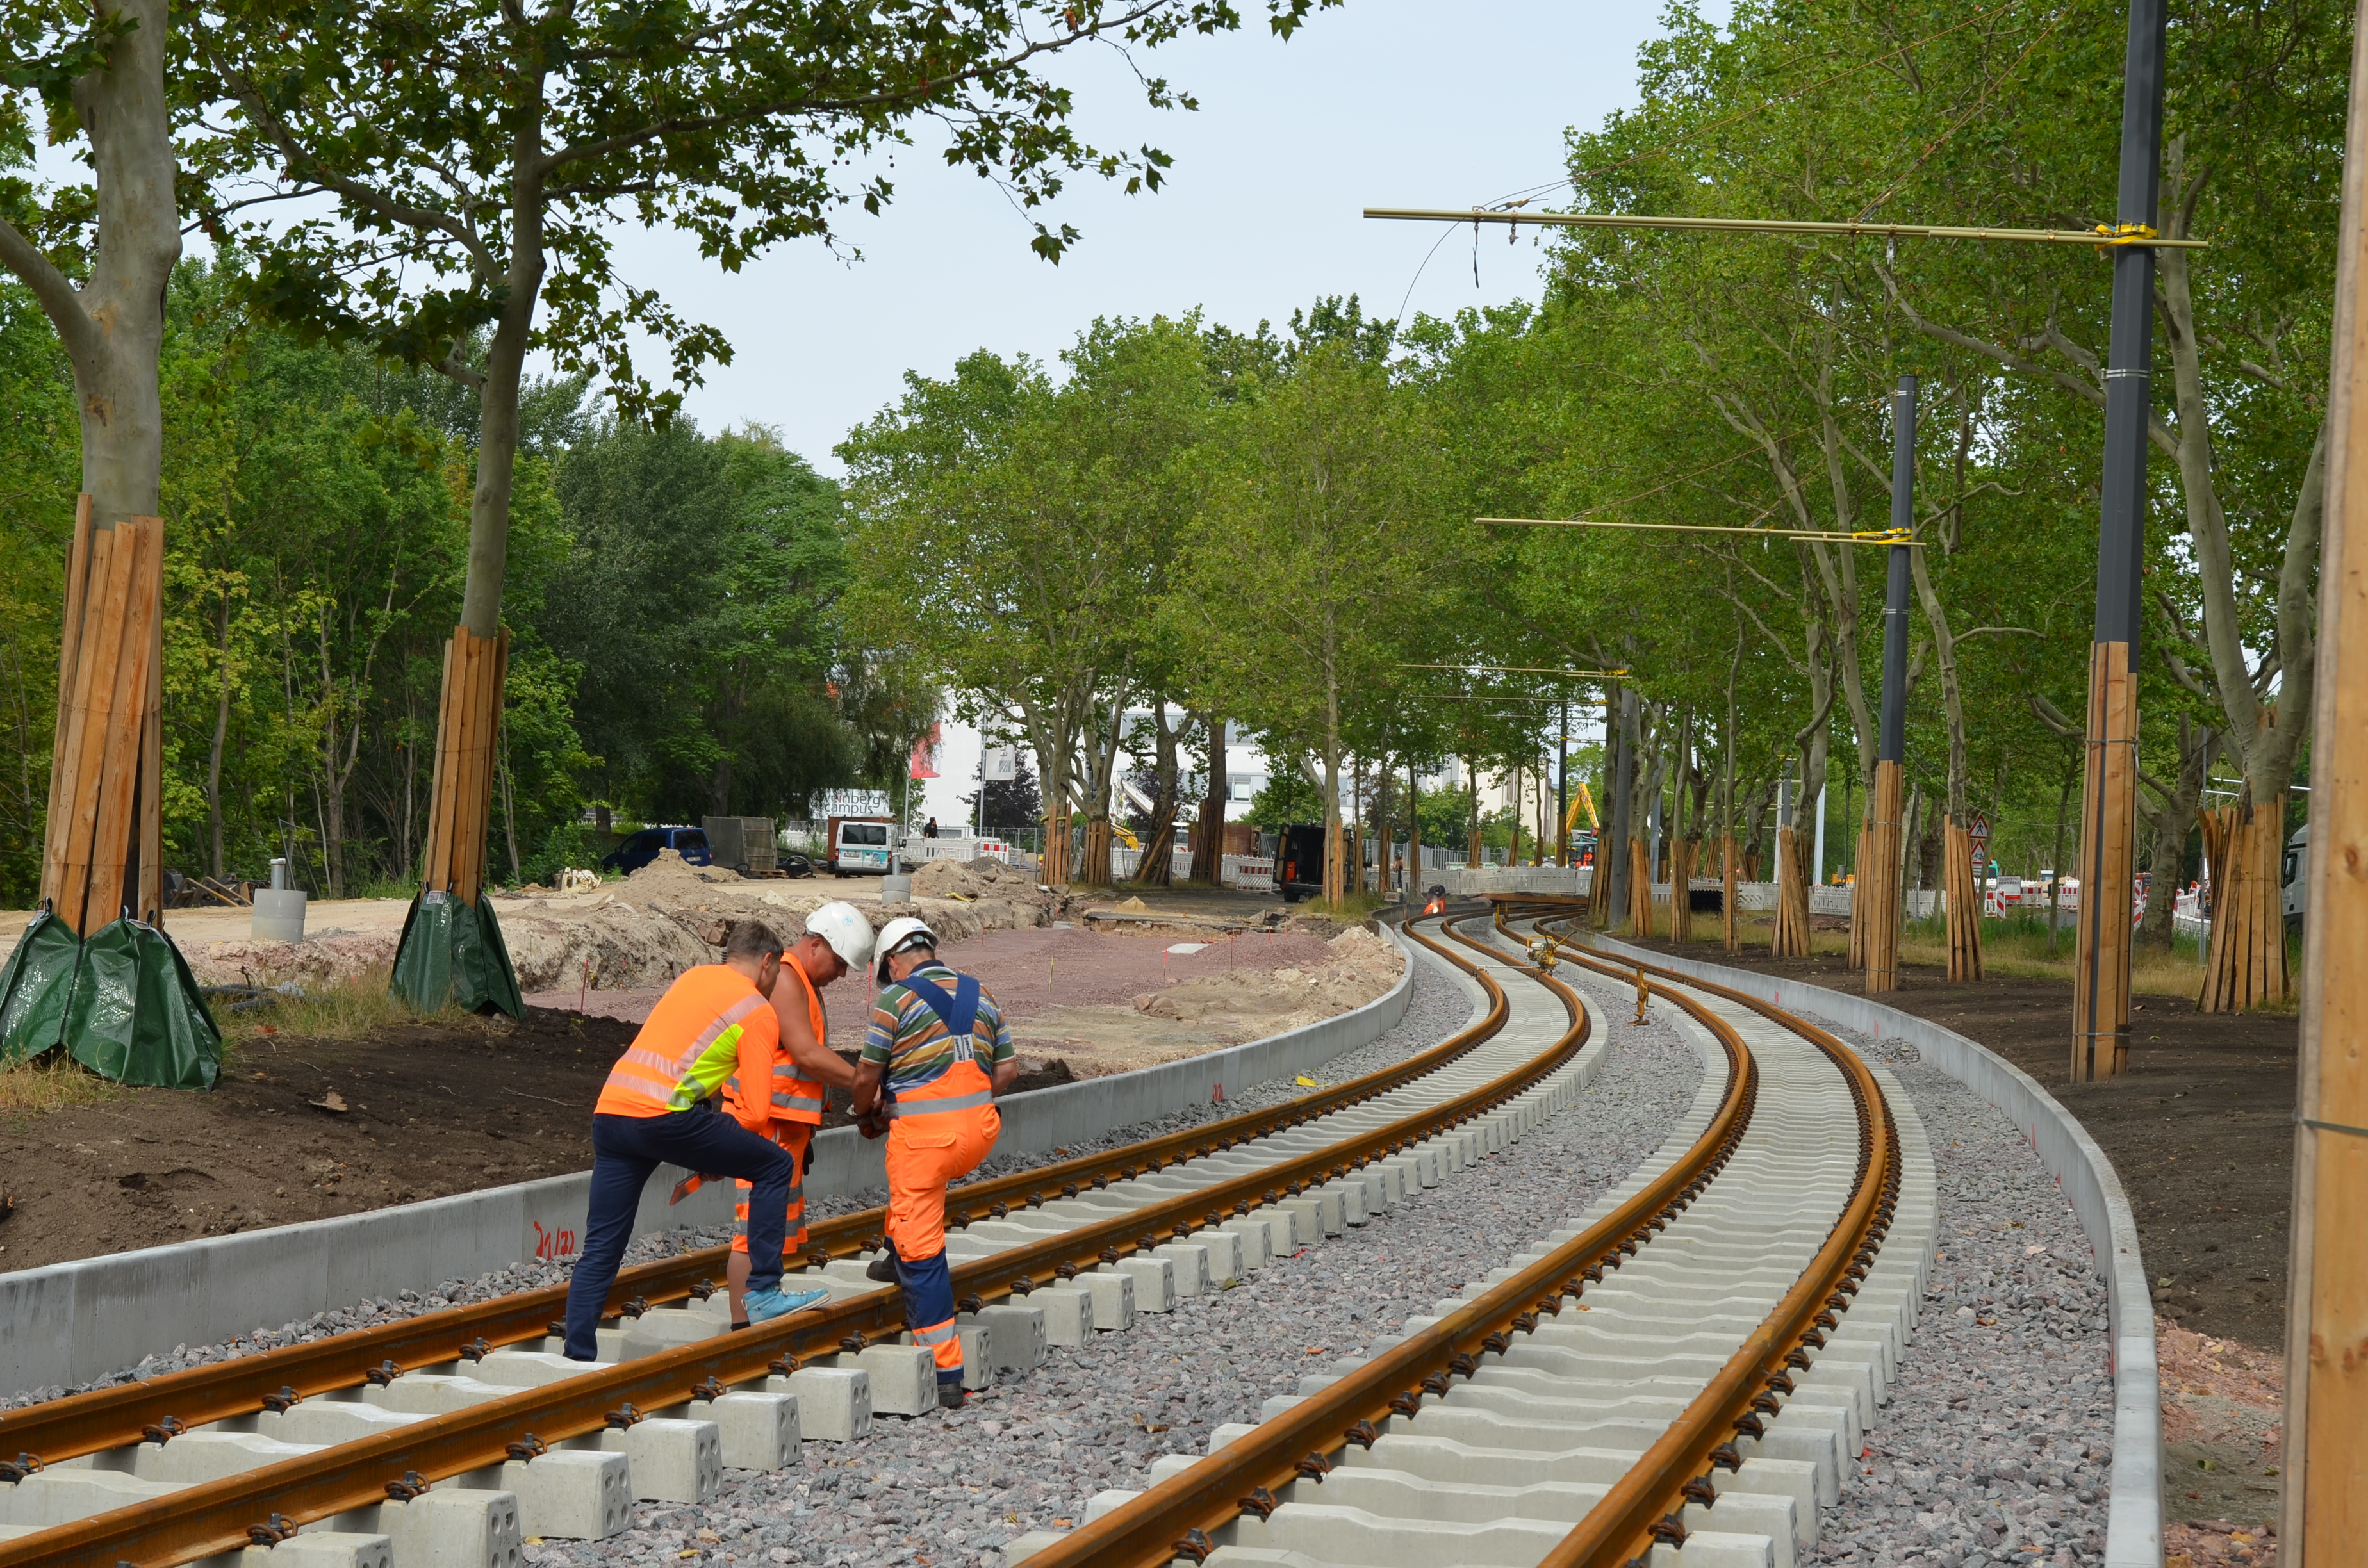 Hier sind zwei neu verlegte Straßenbahngleise zu sehen, die in einer Kurve verlegt wurden. Auf der linken Seite stehen drei Männer in orangefarbener Kleidung, die sich zu beraten scheinen. Rechts und links der Schienen stehen viele grüne Bäume.